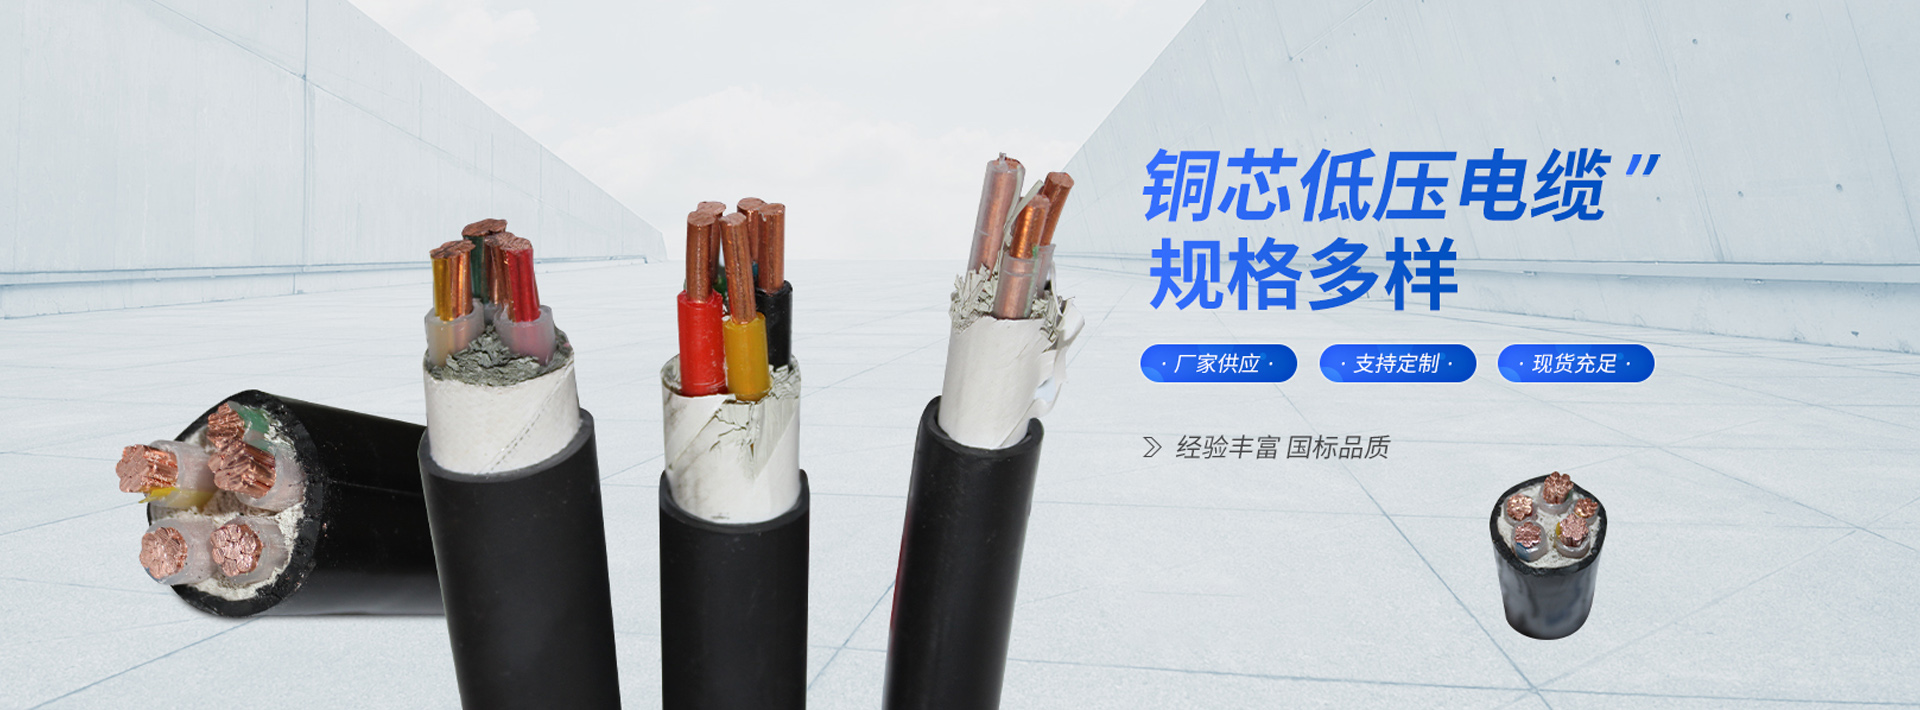 郑州第三电缆厂,郑州第三电缆有限公司,郑州三缆